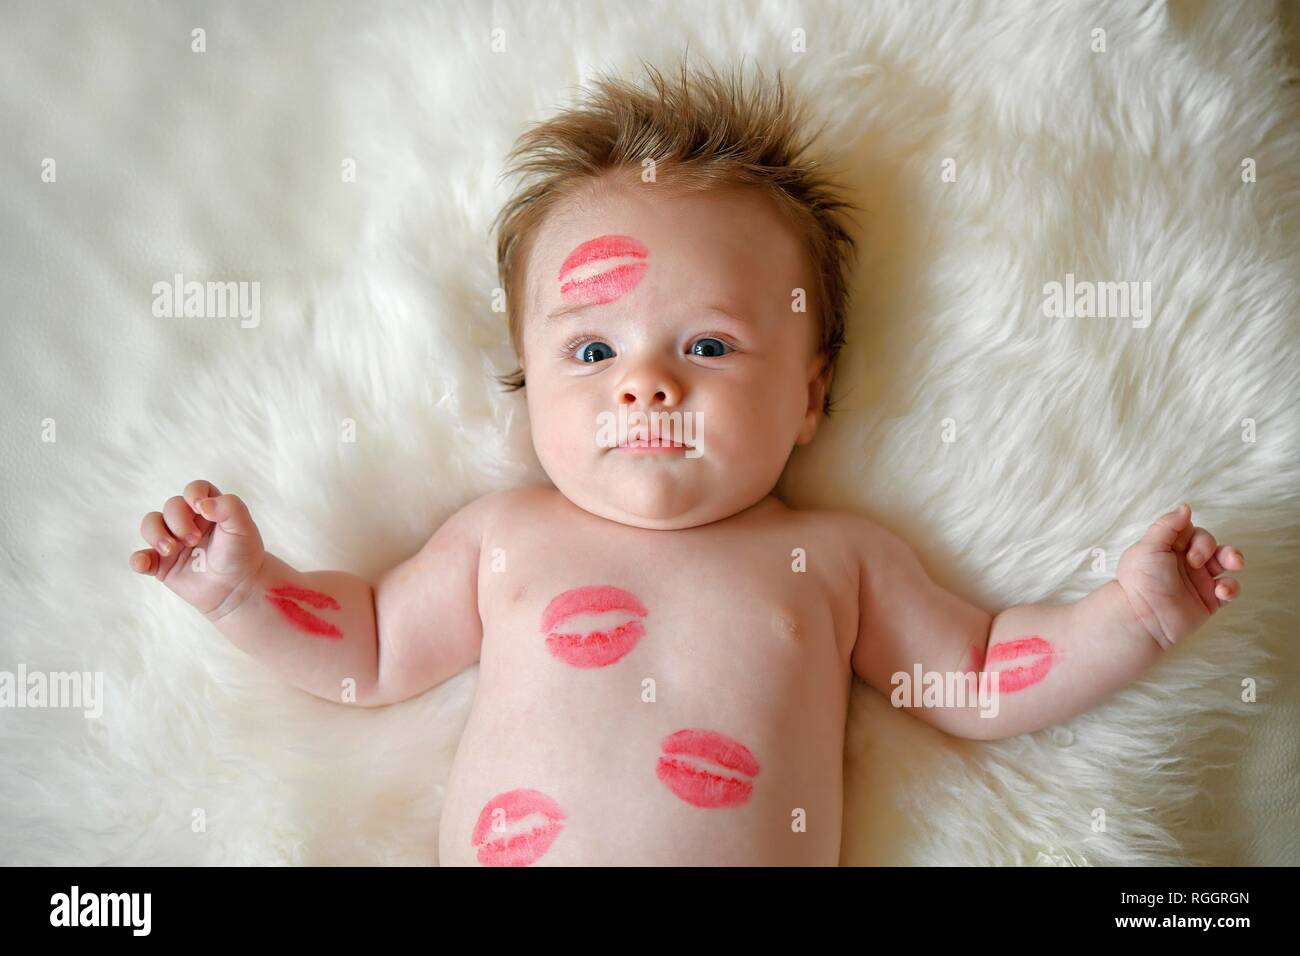 Infantile, tre mesi, con il rosso baciare bocca giace sulla pelliccia, ritratto, Baden-Württemberg, Germania Foto Stock